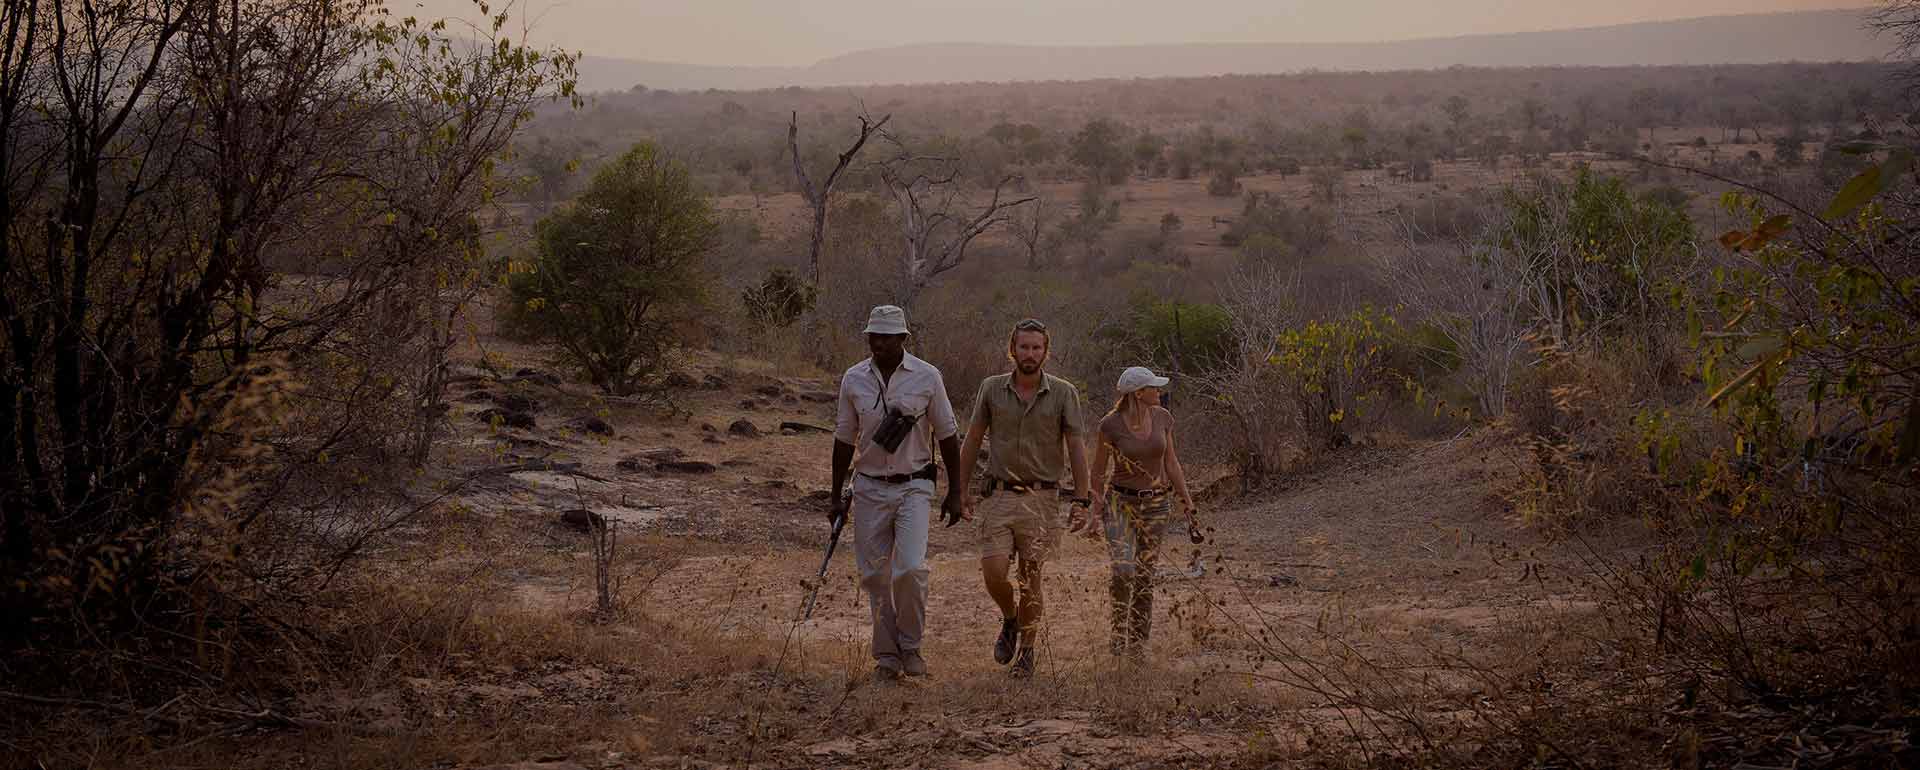 9days-tanzania-walking-safari